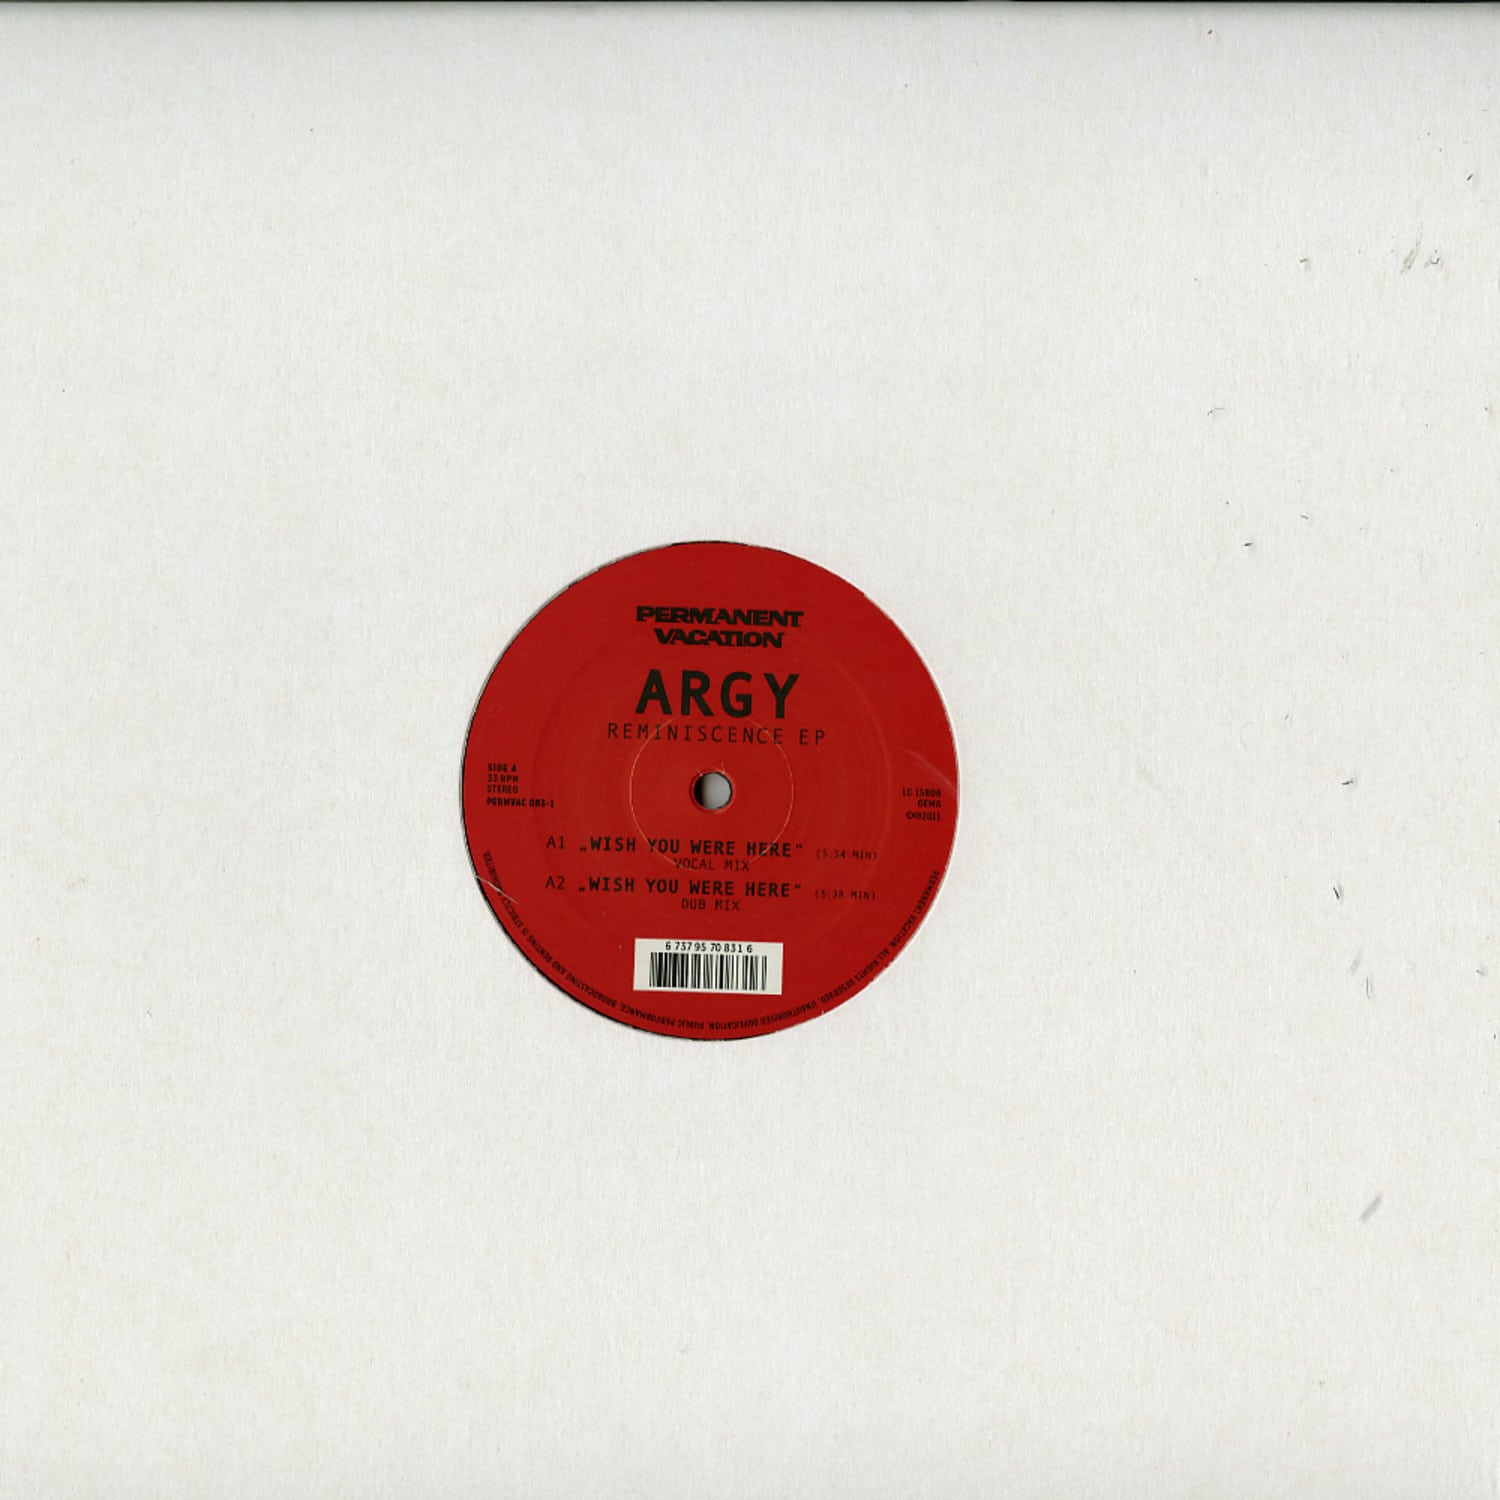 ARGY - REMINISCENCE EP